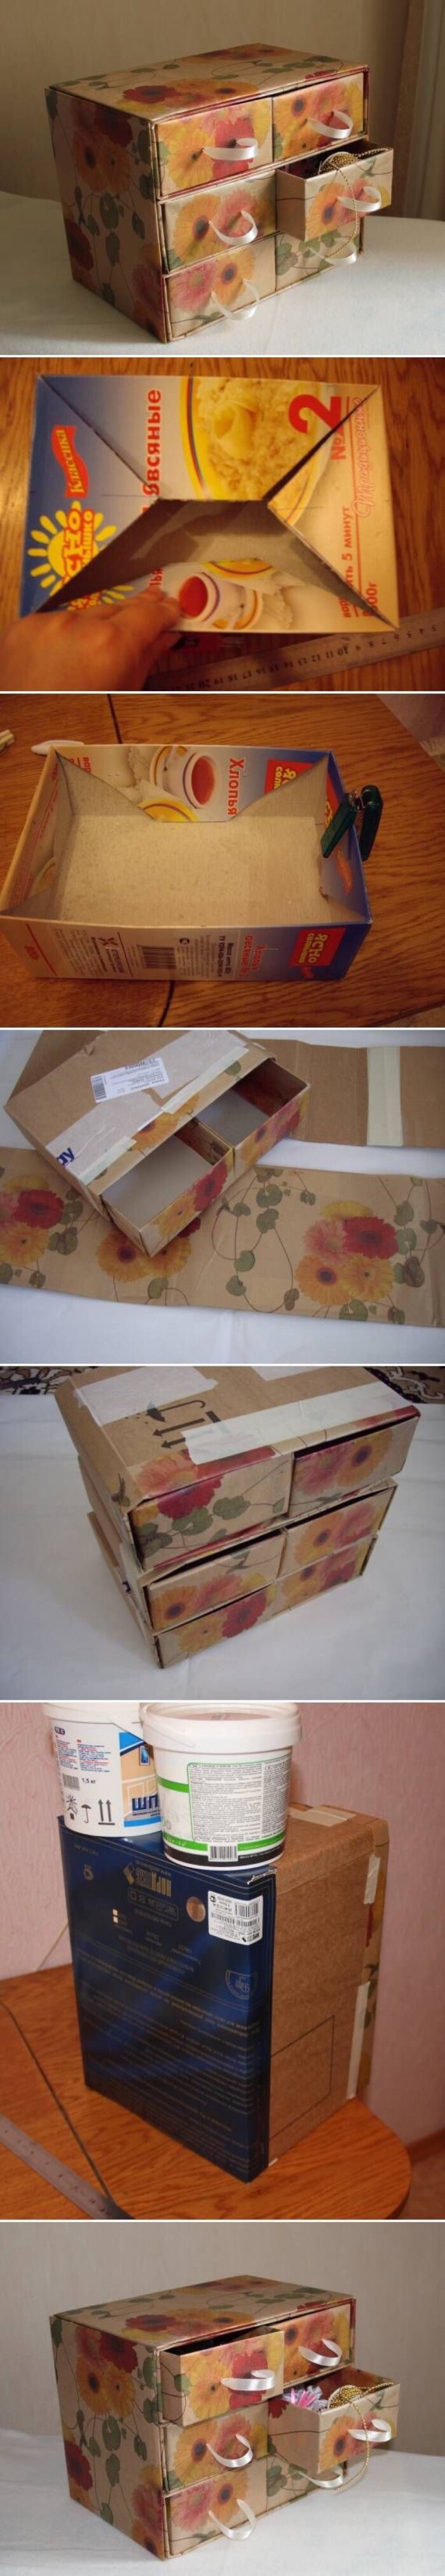 纸盒子废物利用图片